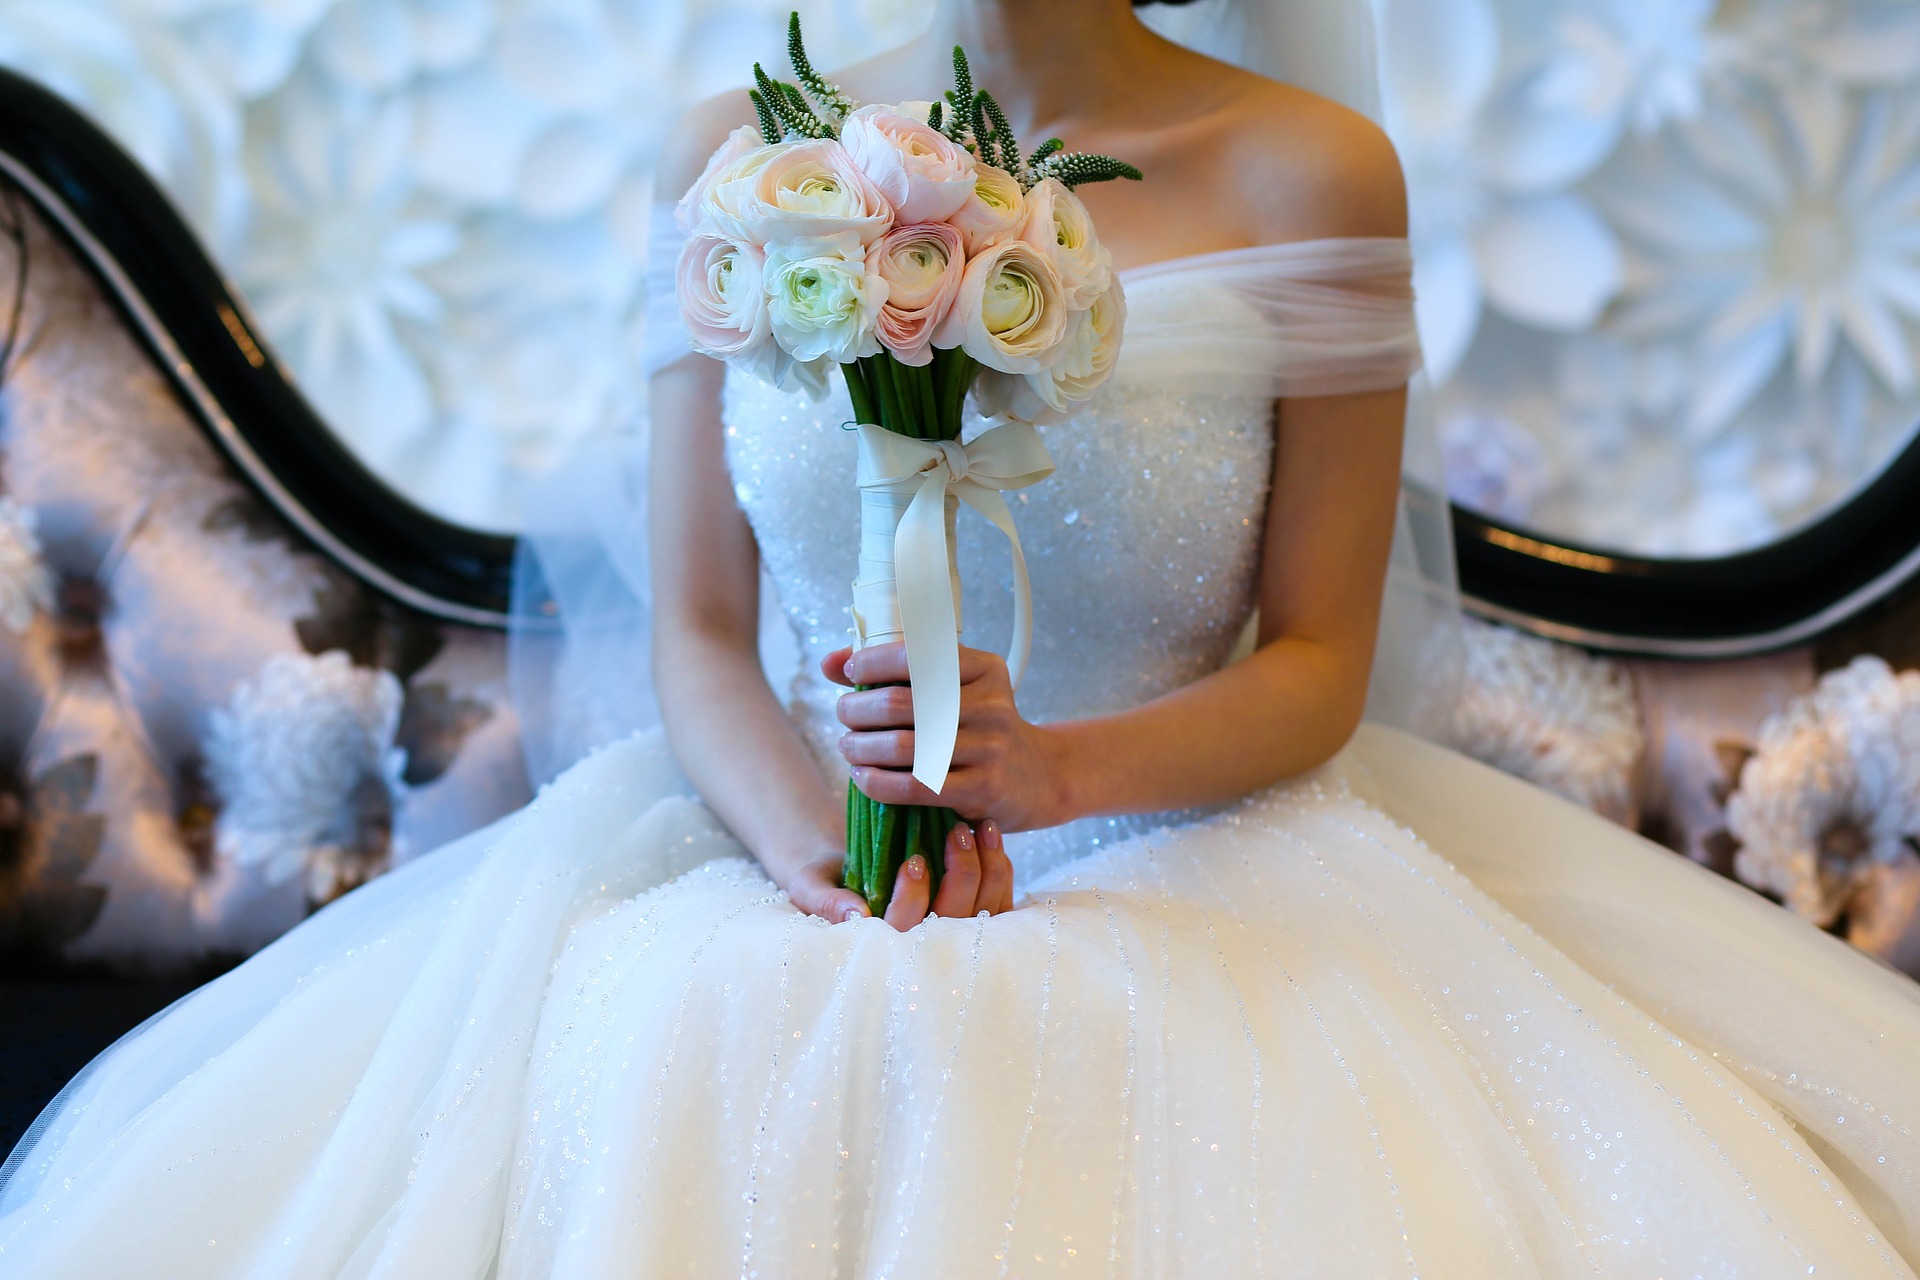 Жительница Иванова стала жертвой киберпреступления при продаже свадебного платья